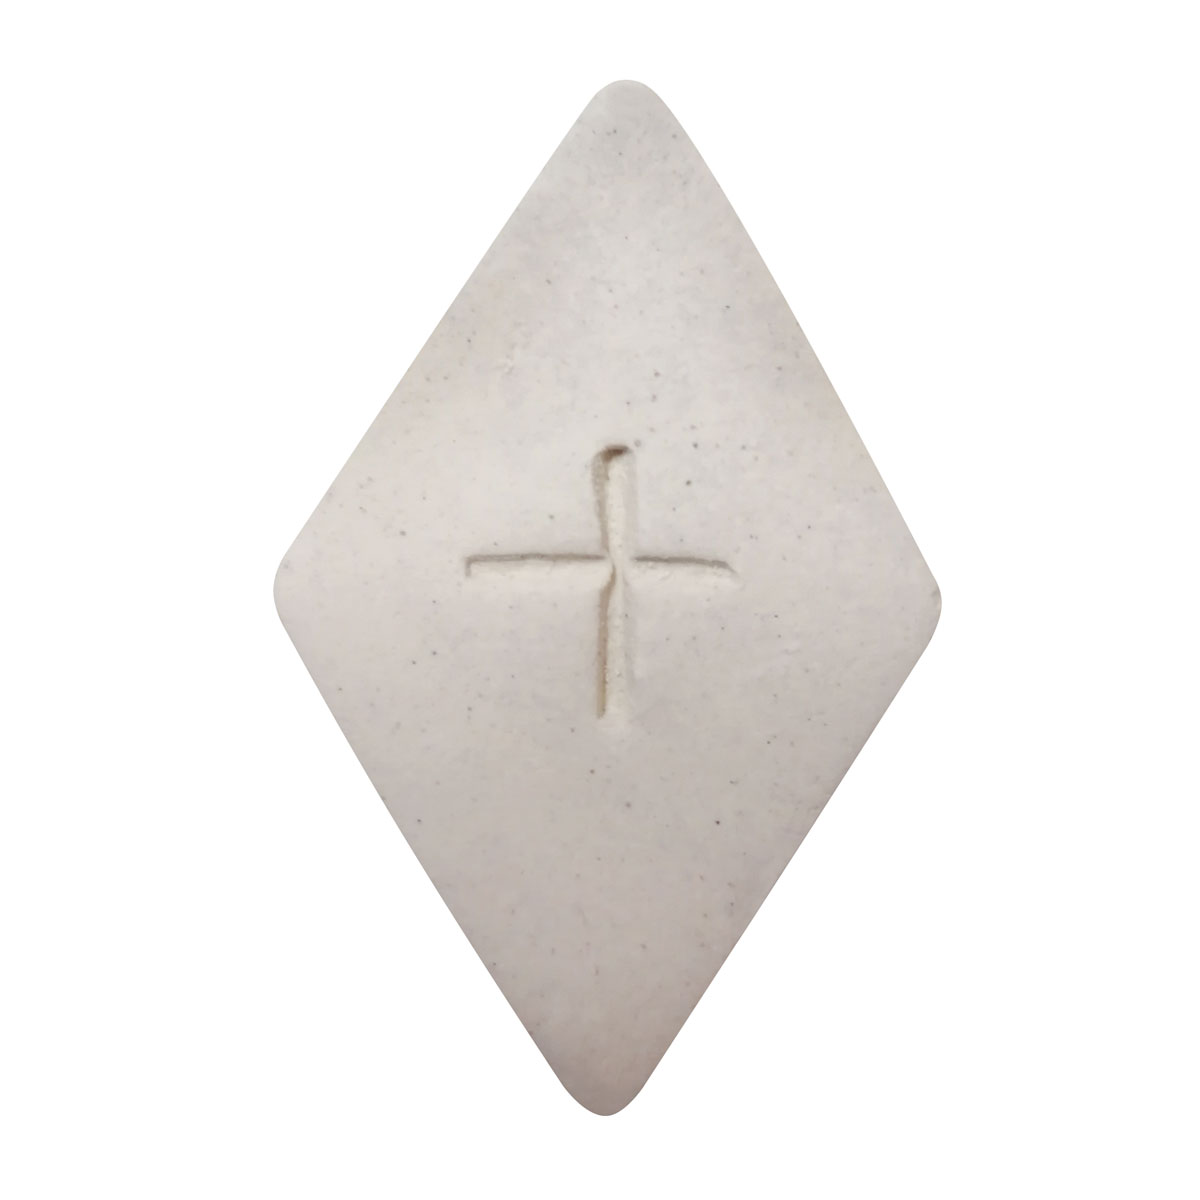 Versicherungszeichen aus Ton "Rauteform" weiß, ca. 5x5 cm, Symbol Strichkreuz